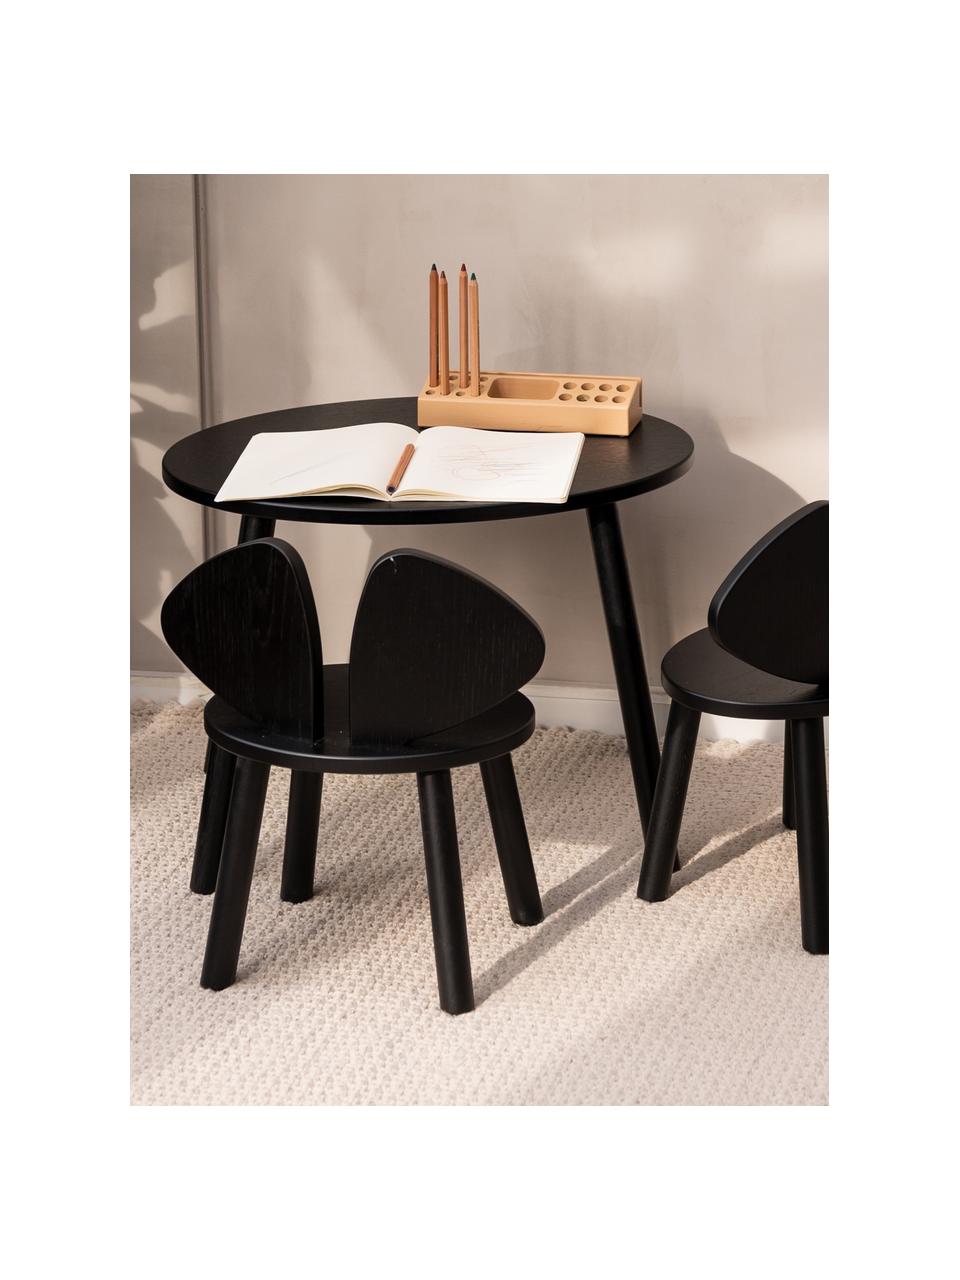 Dětská židle Mouse, Dubová dýha, lakovaná

Tento produkt je vyroben z udržitelných zdrojů dřeva s certifikací FSC®., Černá, Š 43 cm, H 28 cm